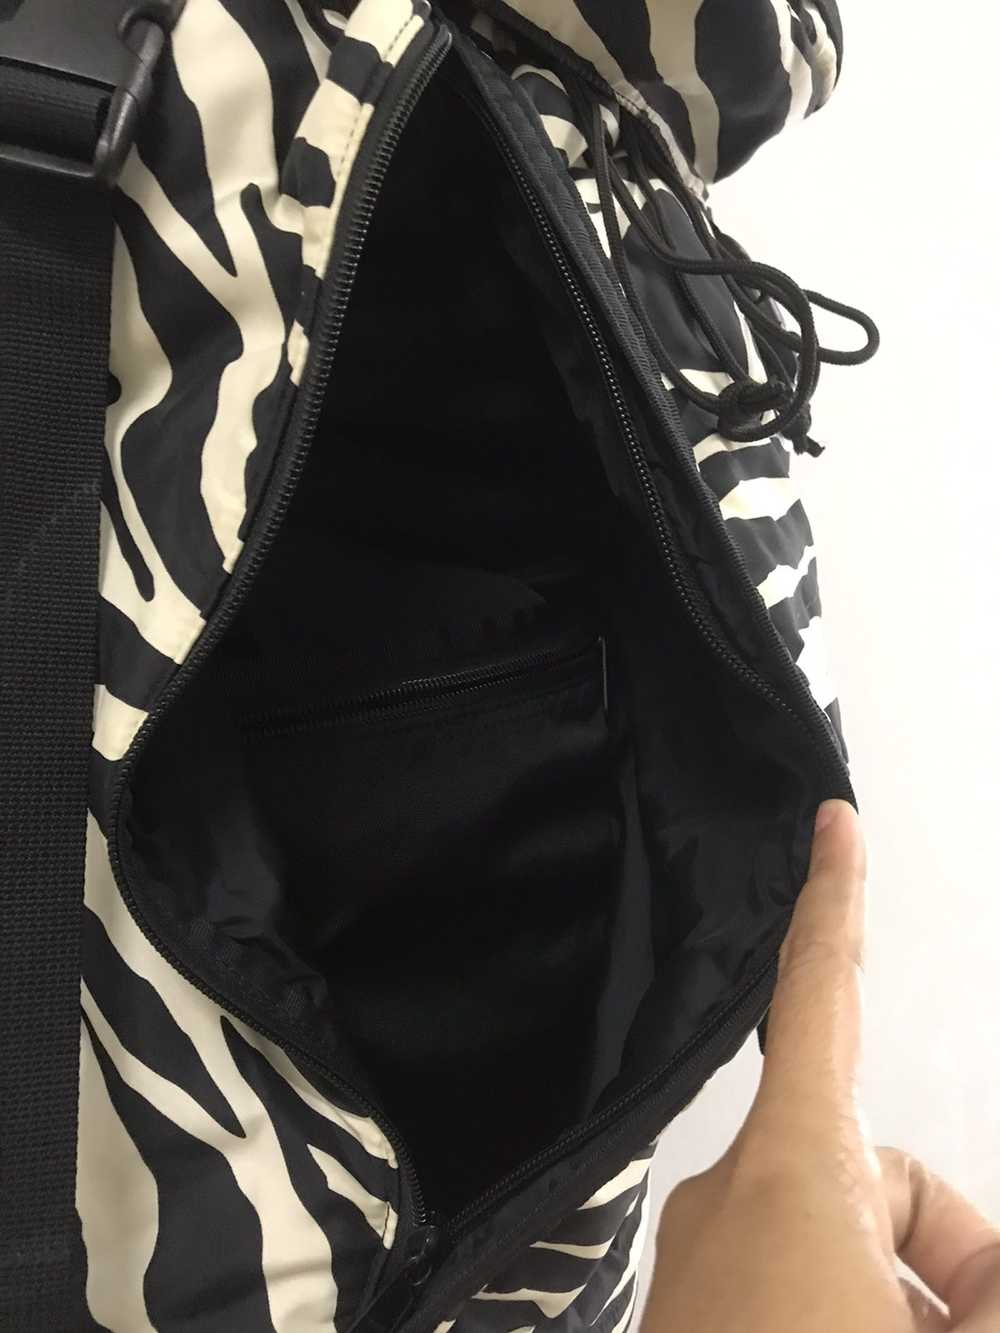 Porter Porter-Zebra Rucksack backpack - image 6